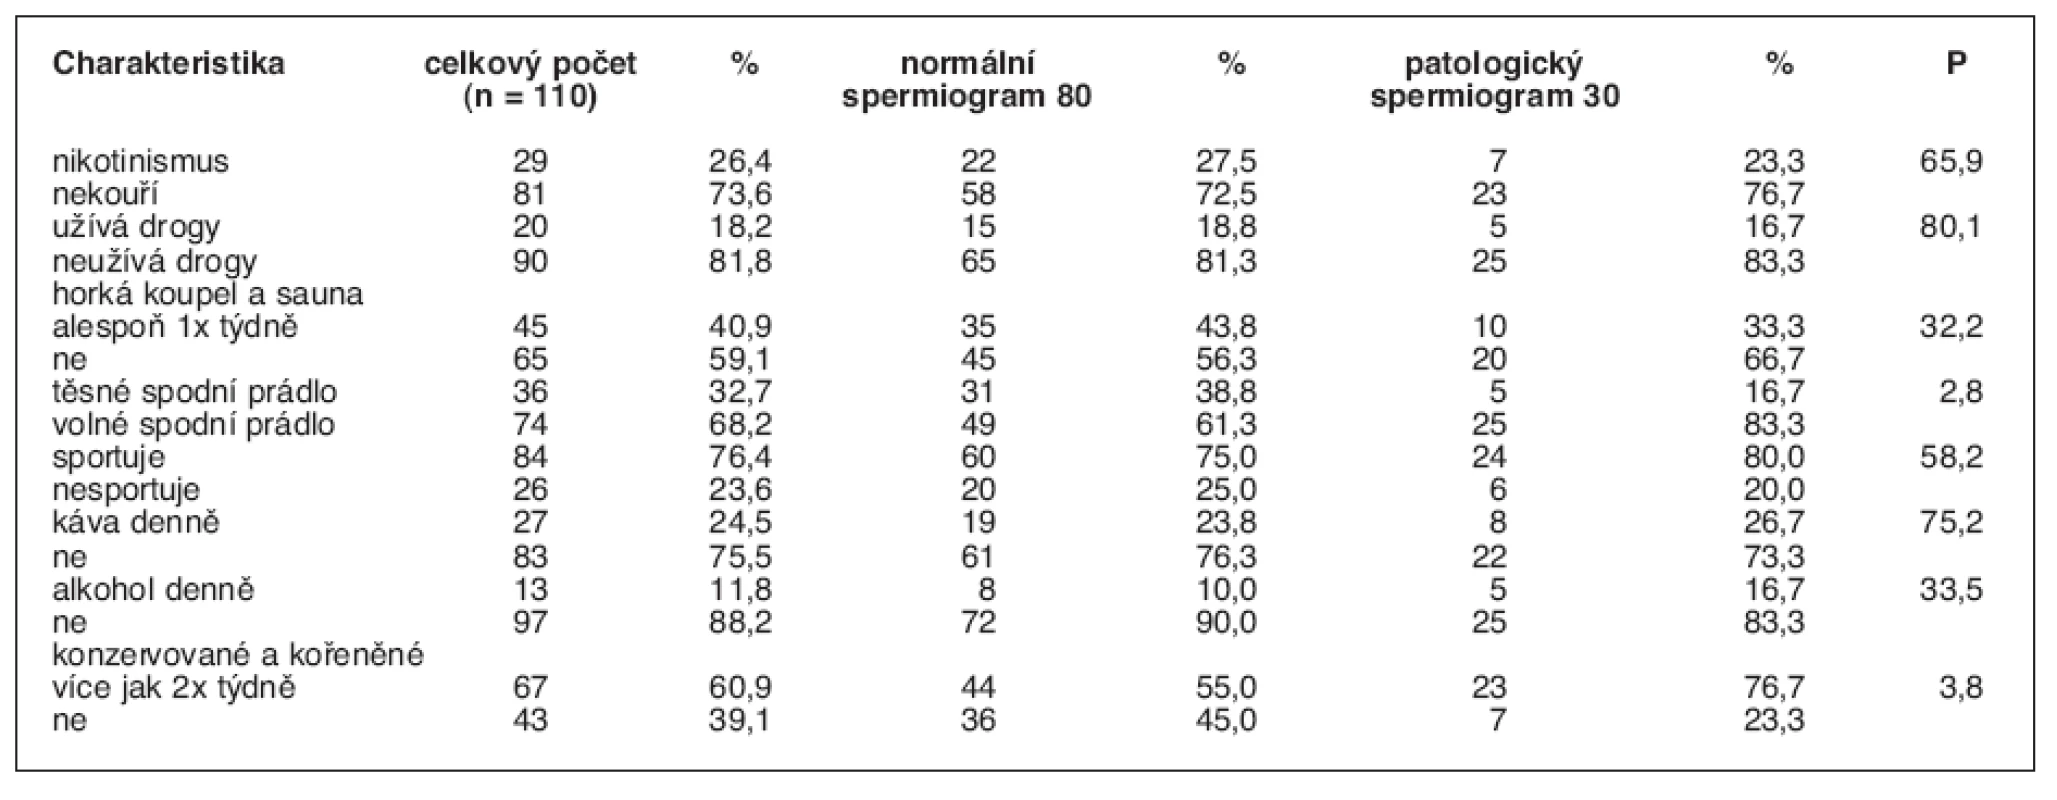 Procentuální zastoupení studentů s různými anamnestickými faktory ve skupině s normálním a patologickým spermiogramem
P udává závislost faktoru na typu spermiogramu, hodnoty P &lt; 5 jsou statisticky významné.